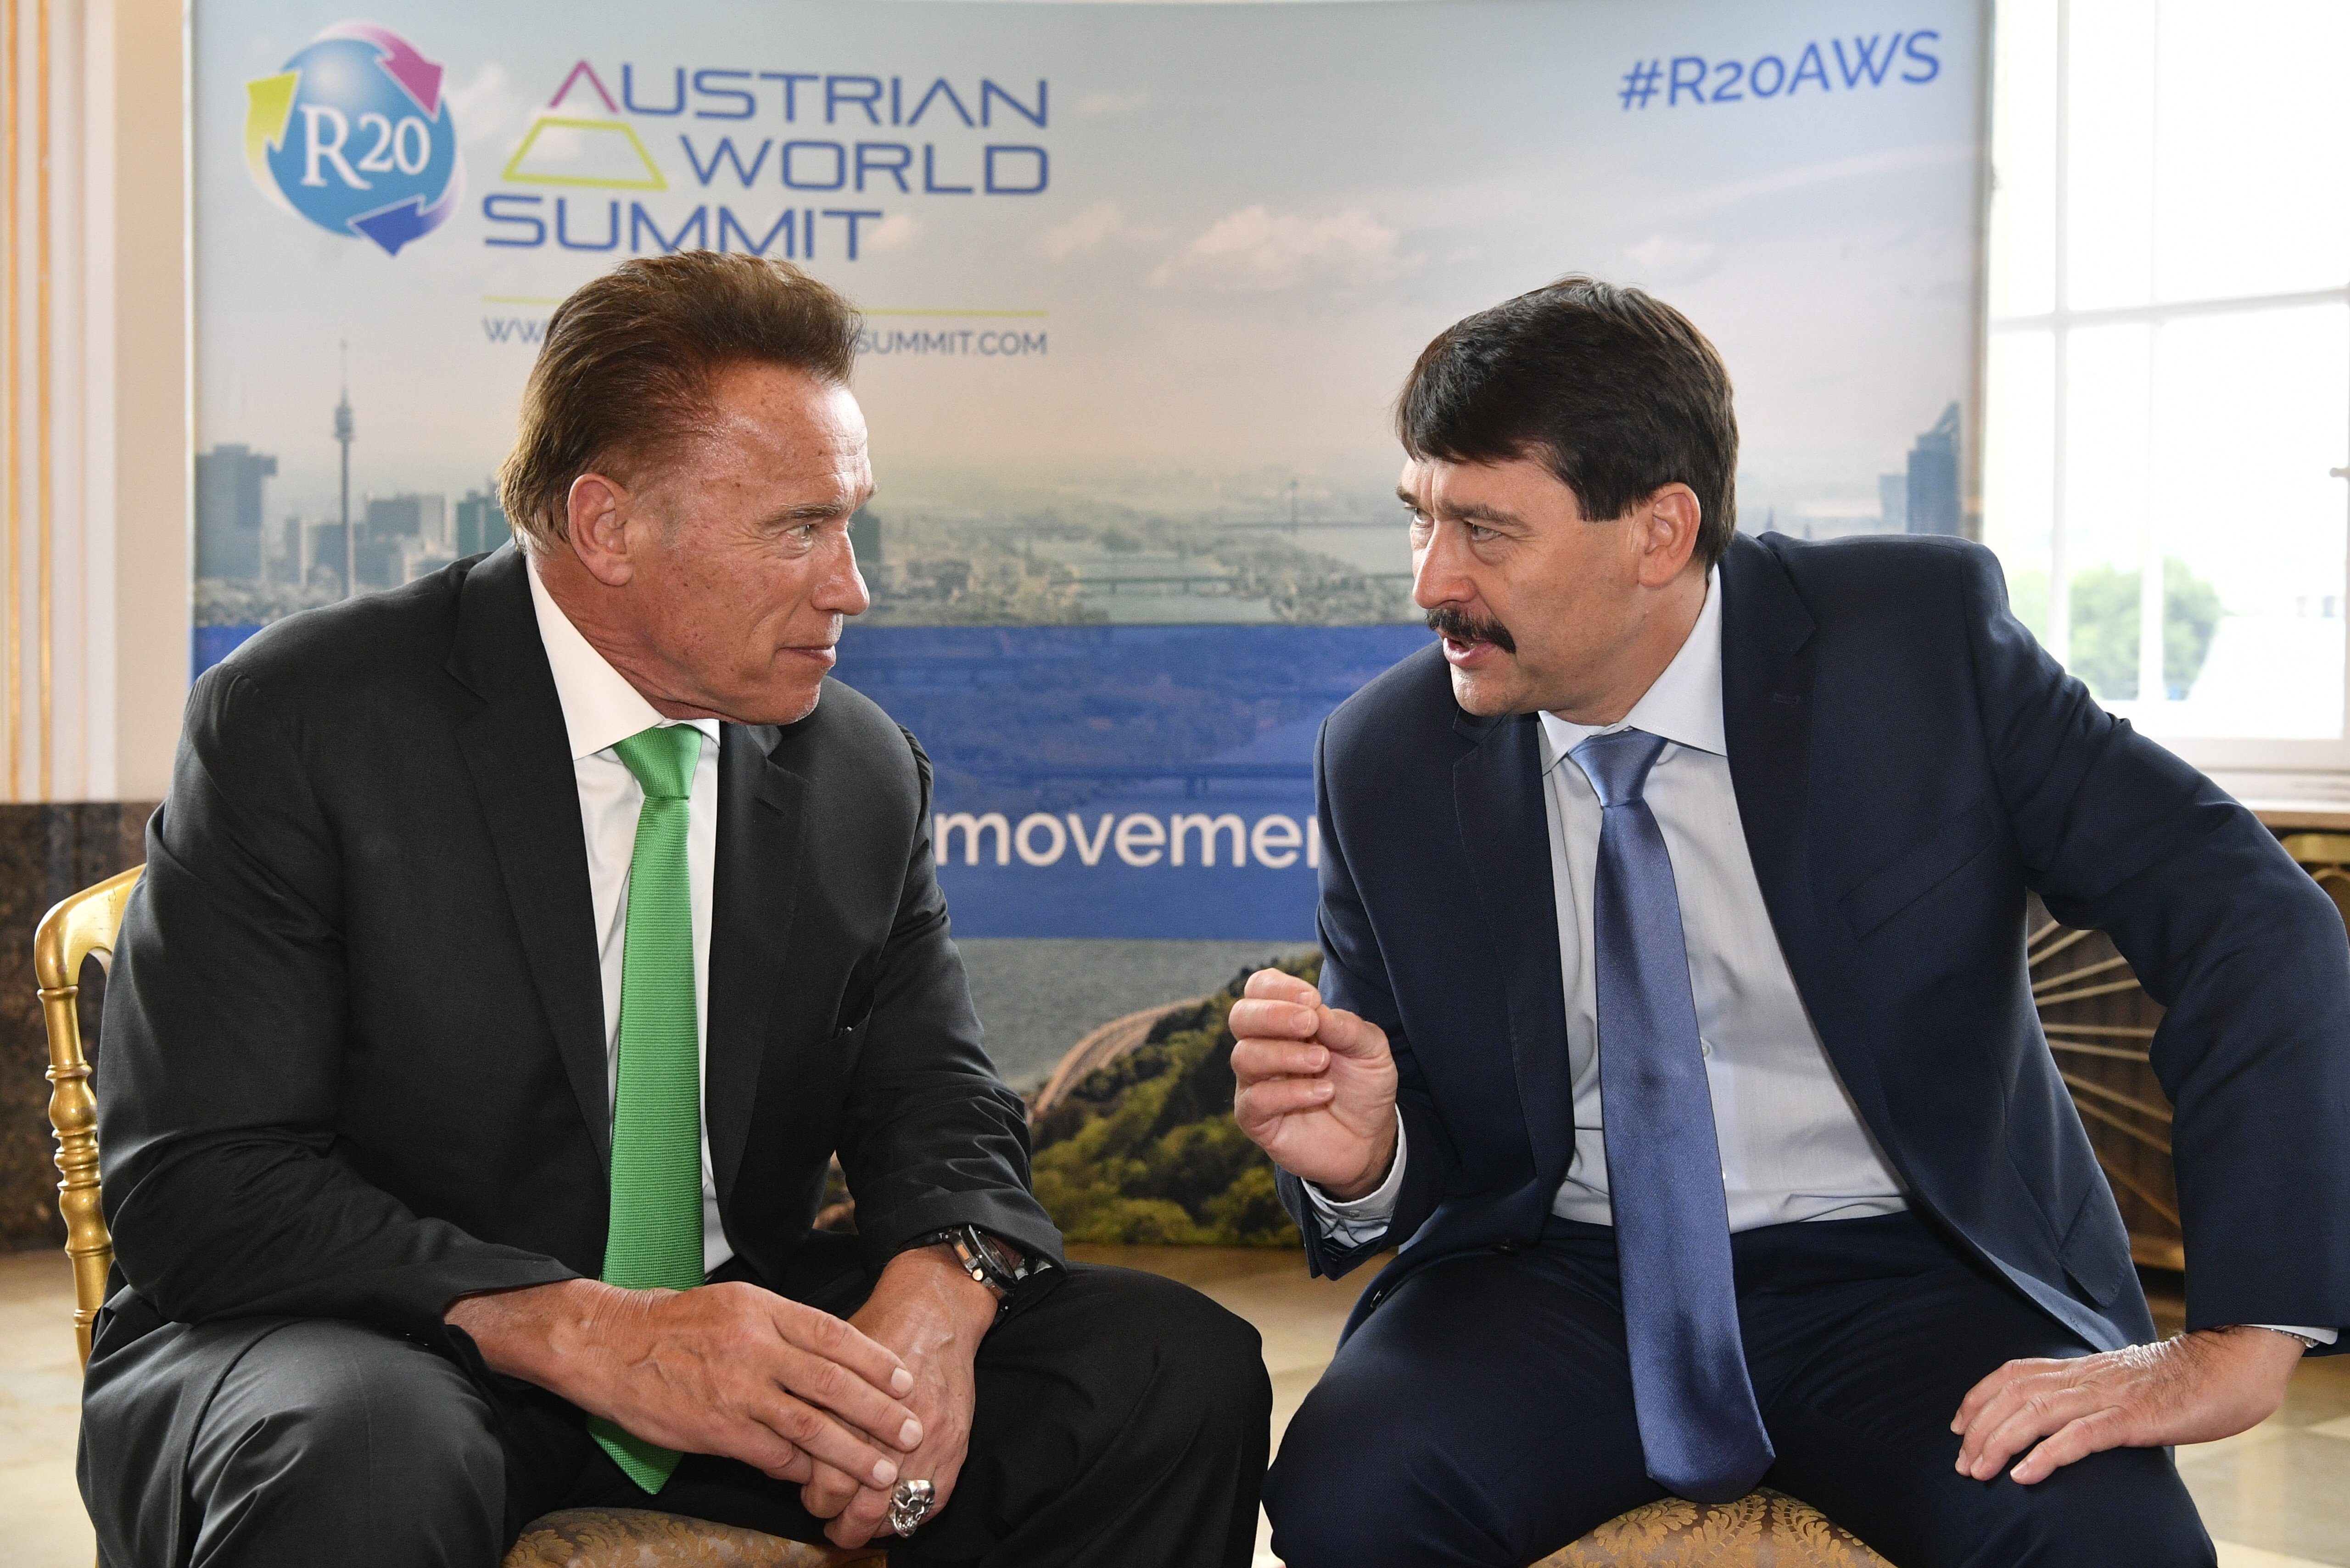 R20 奧地利世界峰會 - 匈牙利總統阿德爾應對氣候變化的鬥爭取得成果